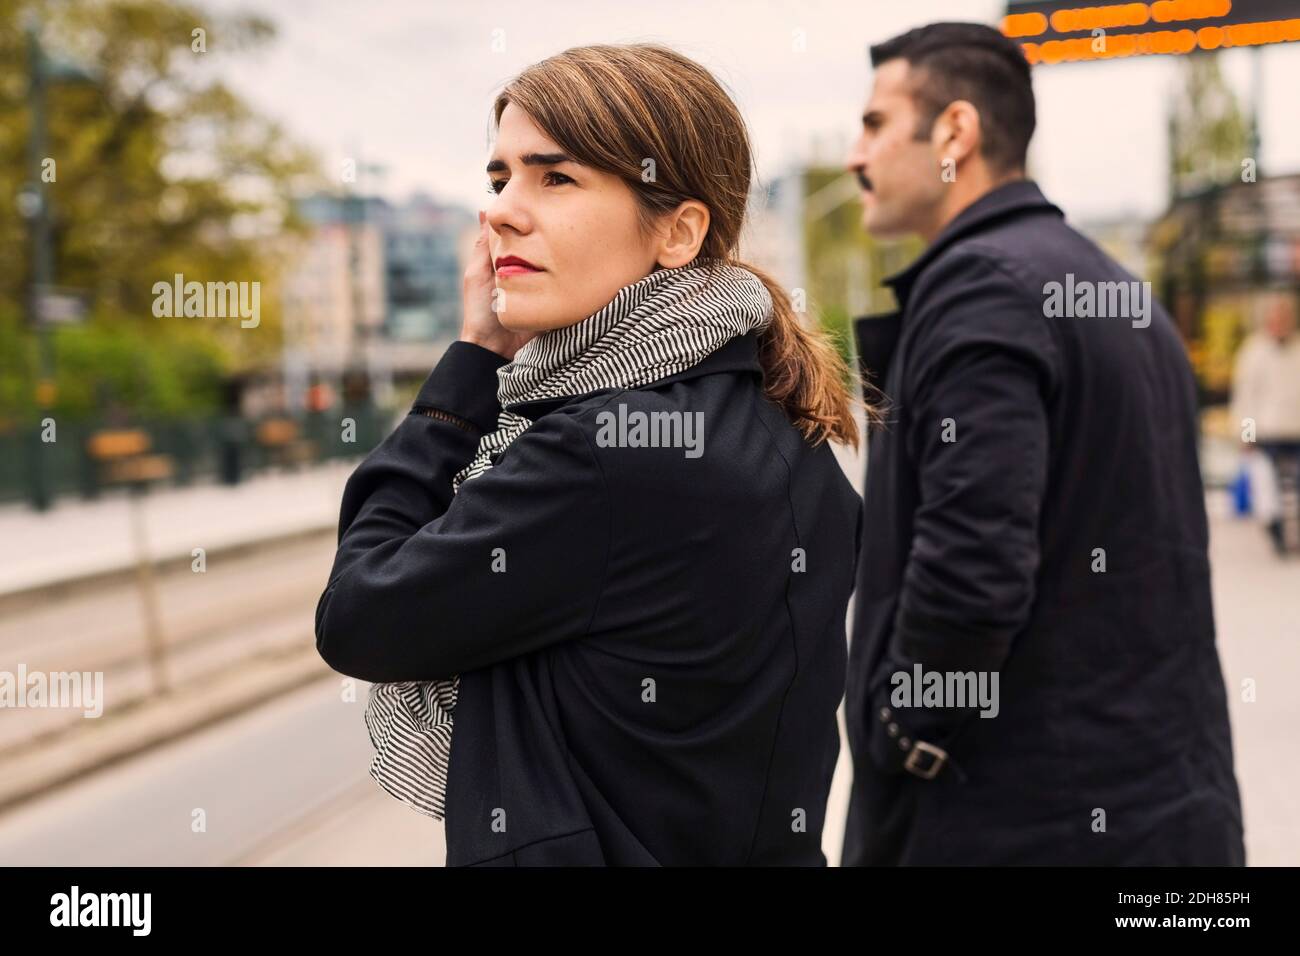 Seitenansicht der weiblichen und männlichen Passagiere, die auf die Straßenbahn warten Auf der Plattform Stockfoto